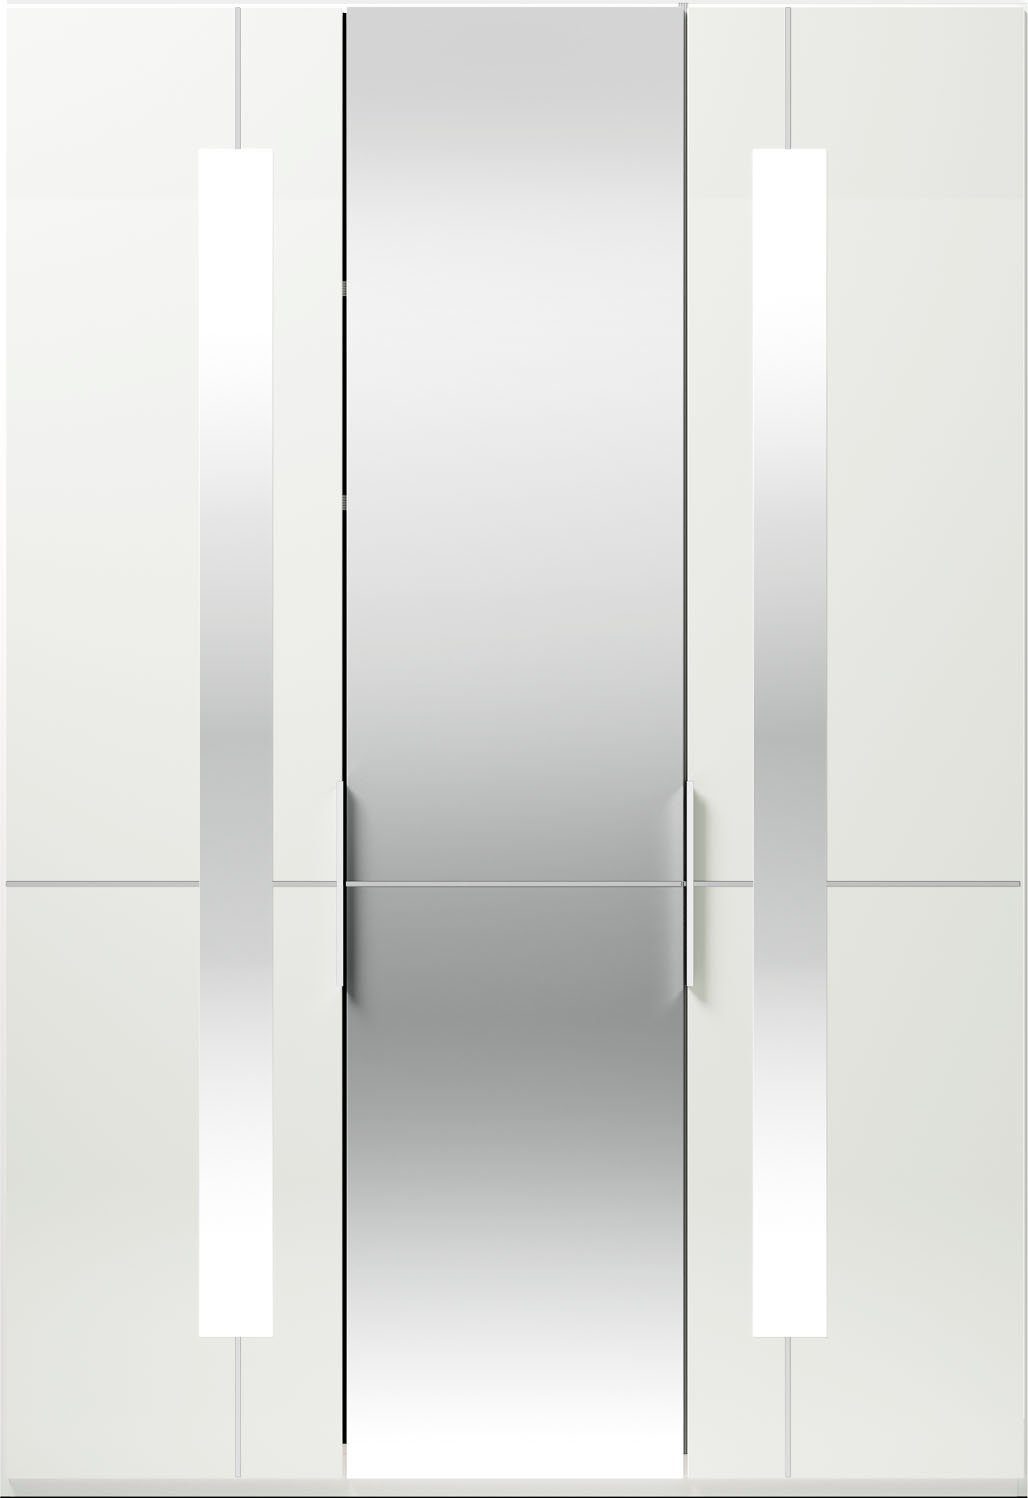 Imola GALLERY Glas- M Kleiderstangen, mit Spiegeltüren inkl. und Weiß Drehtürenschrank Musterring Einlegeböden W by branded und